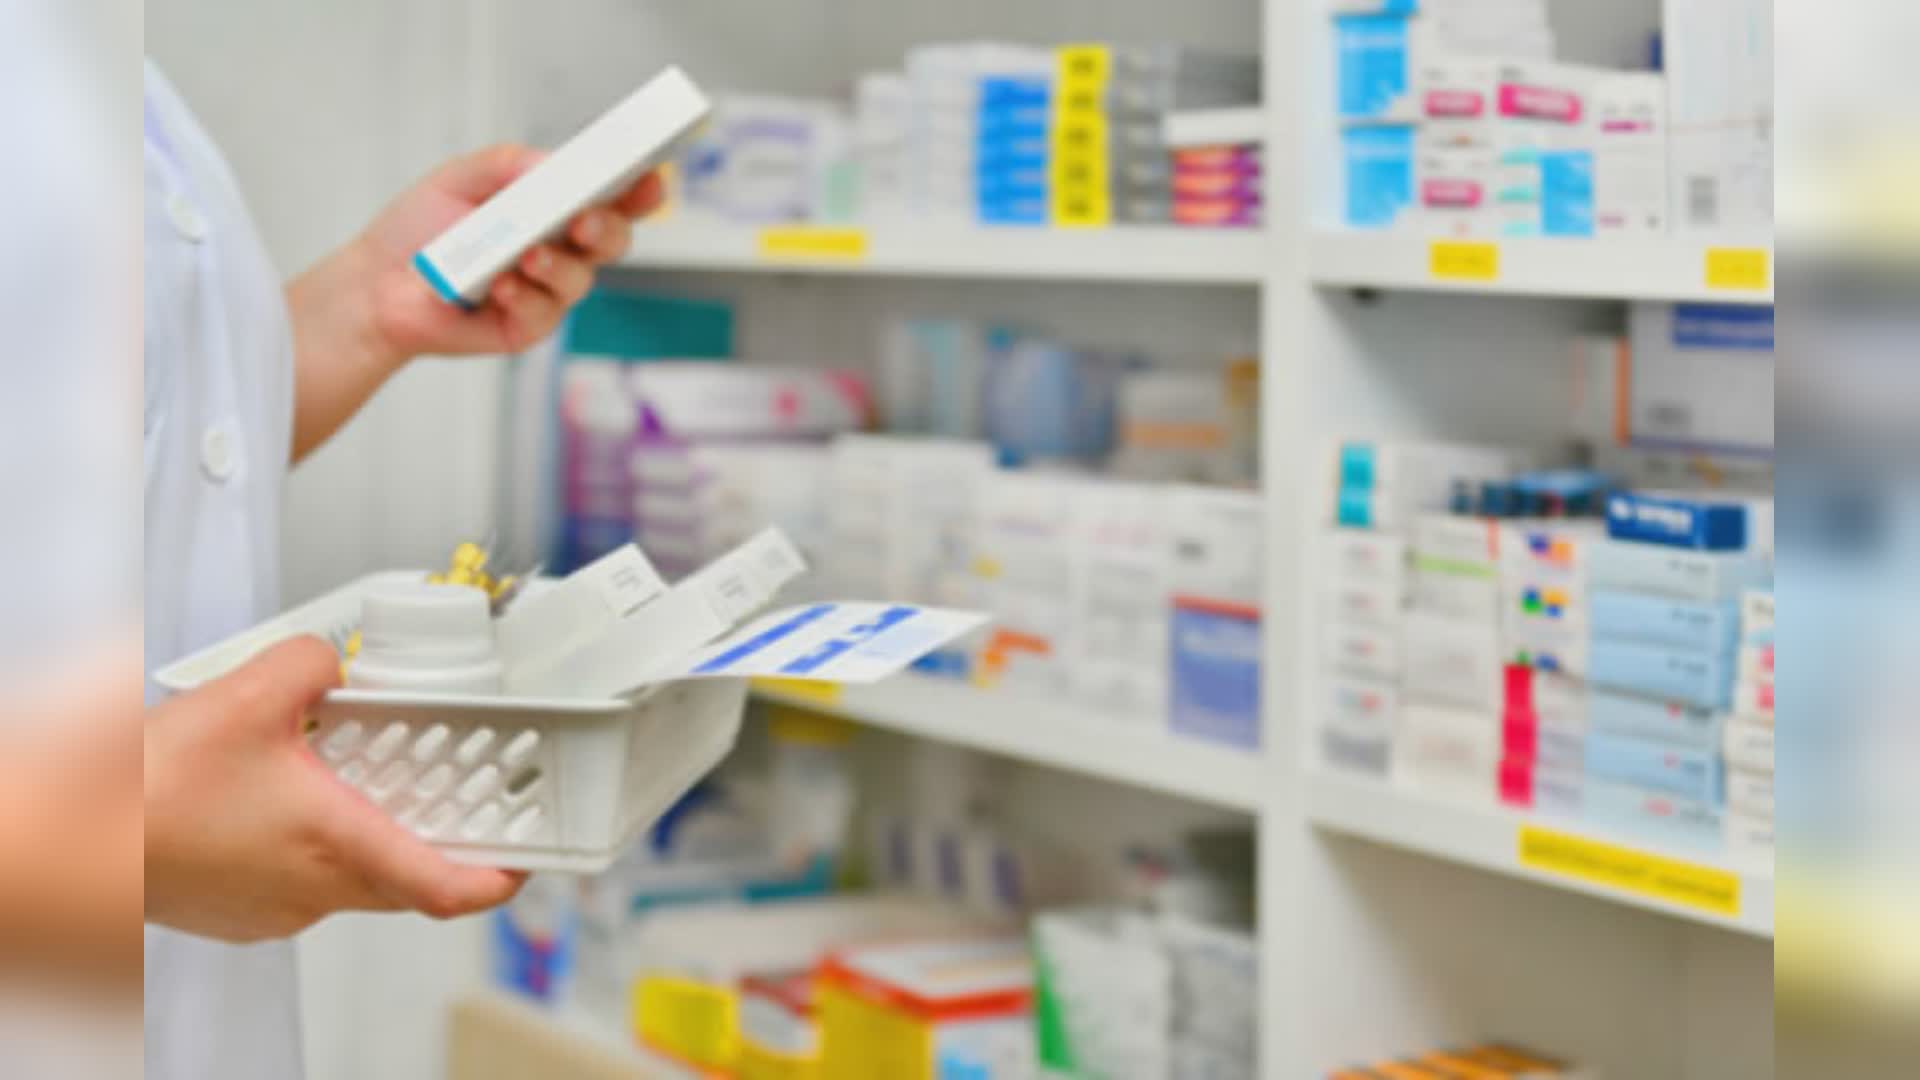 Liguria, accordo Regione-Federfarm: da domani medicinali e ausili per diabetici in tutte le farmacie